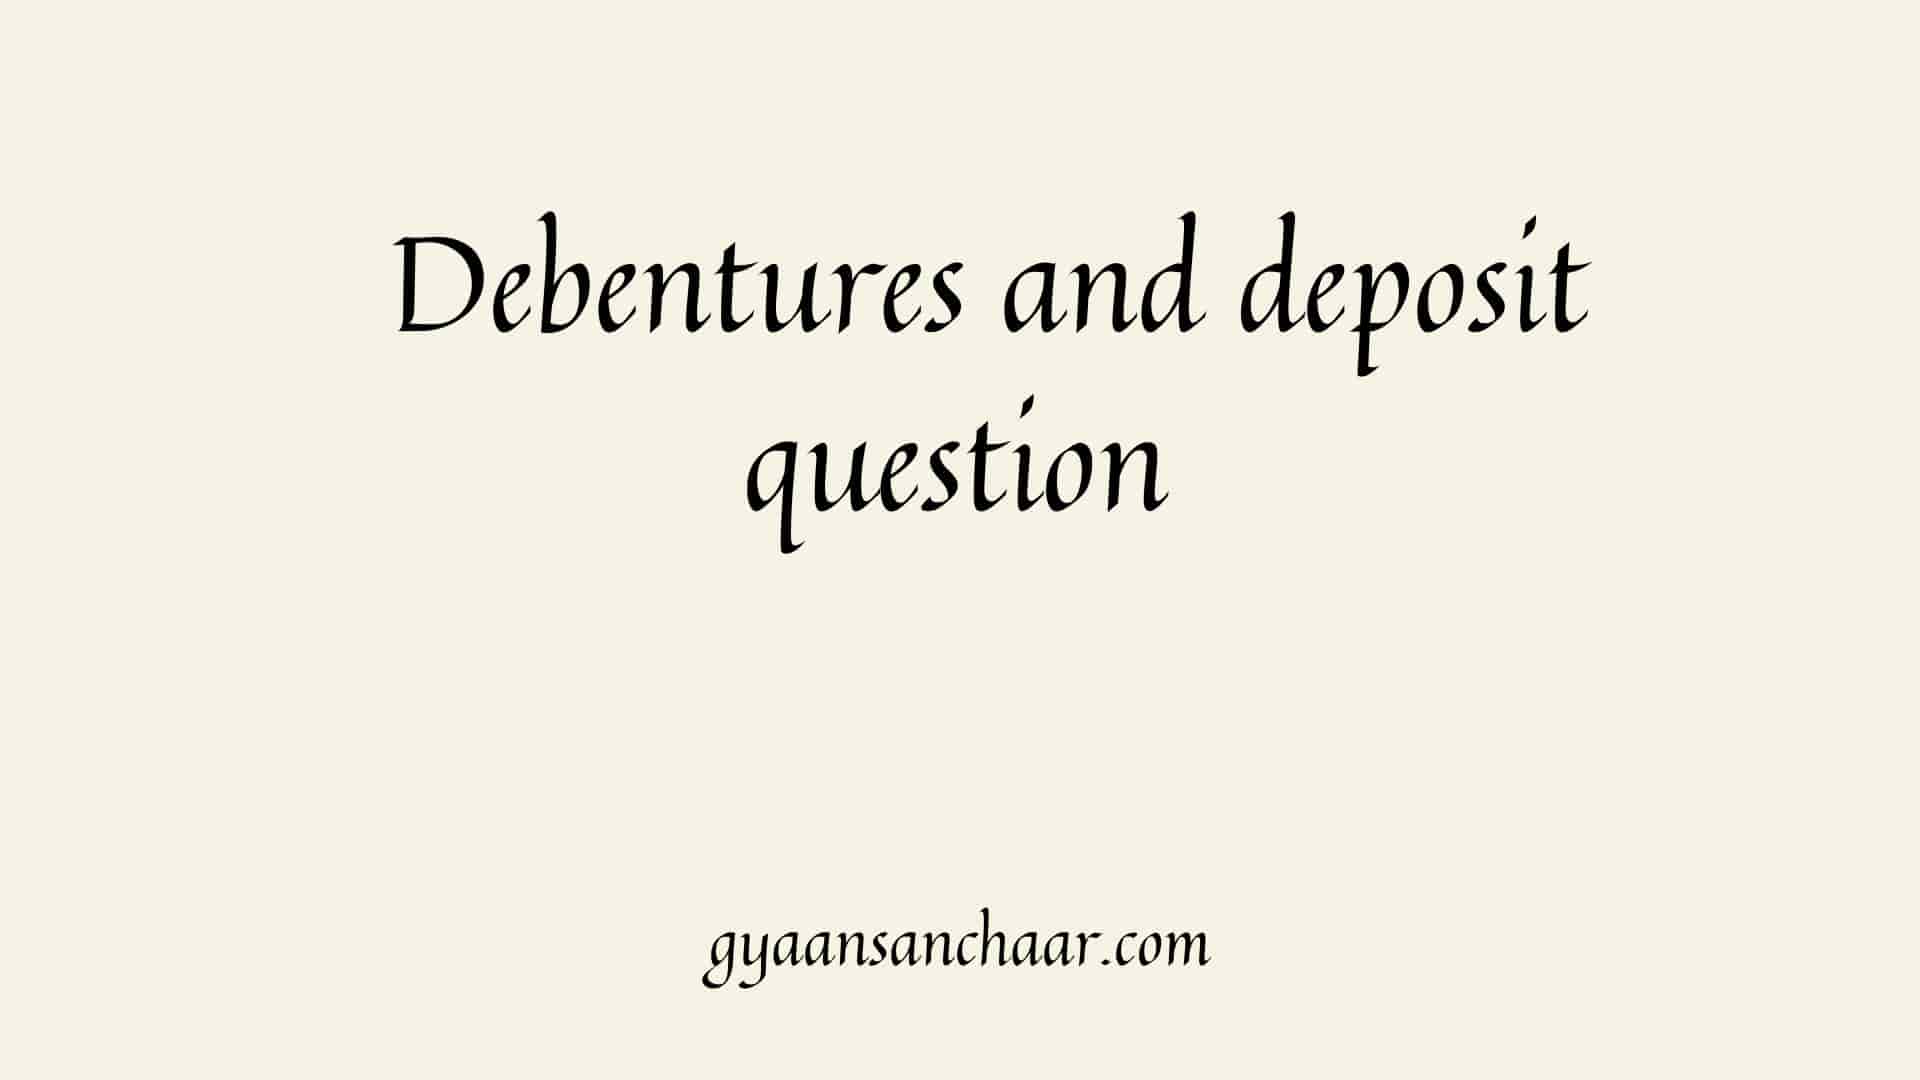 Debentures and deposit question